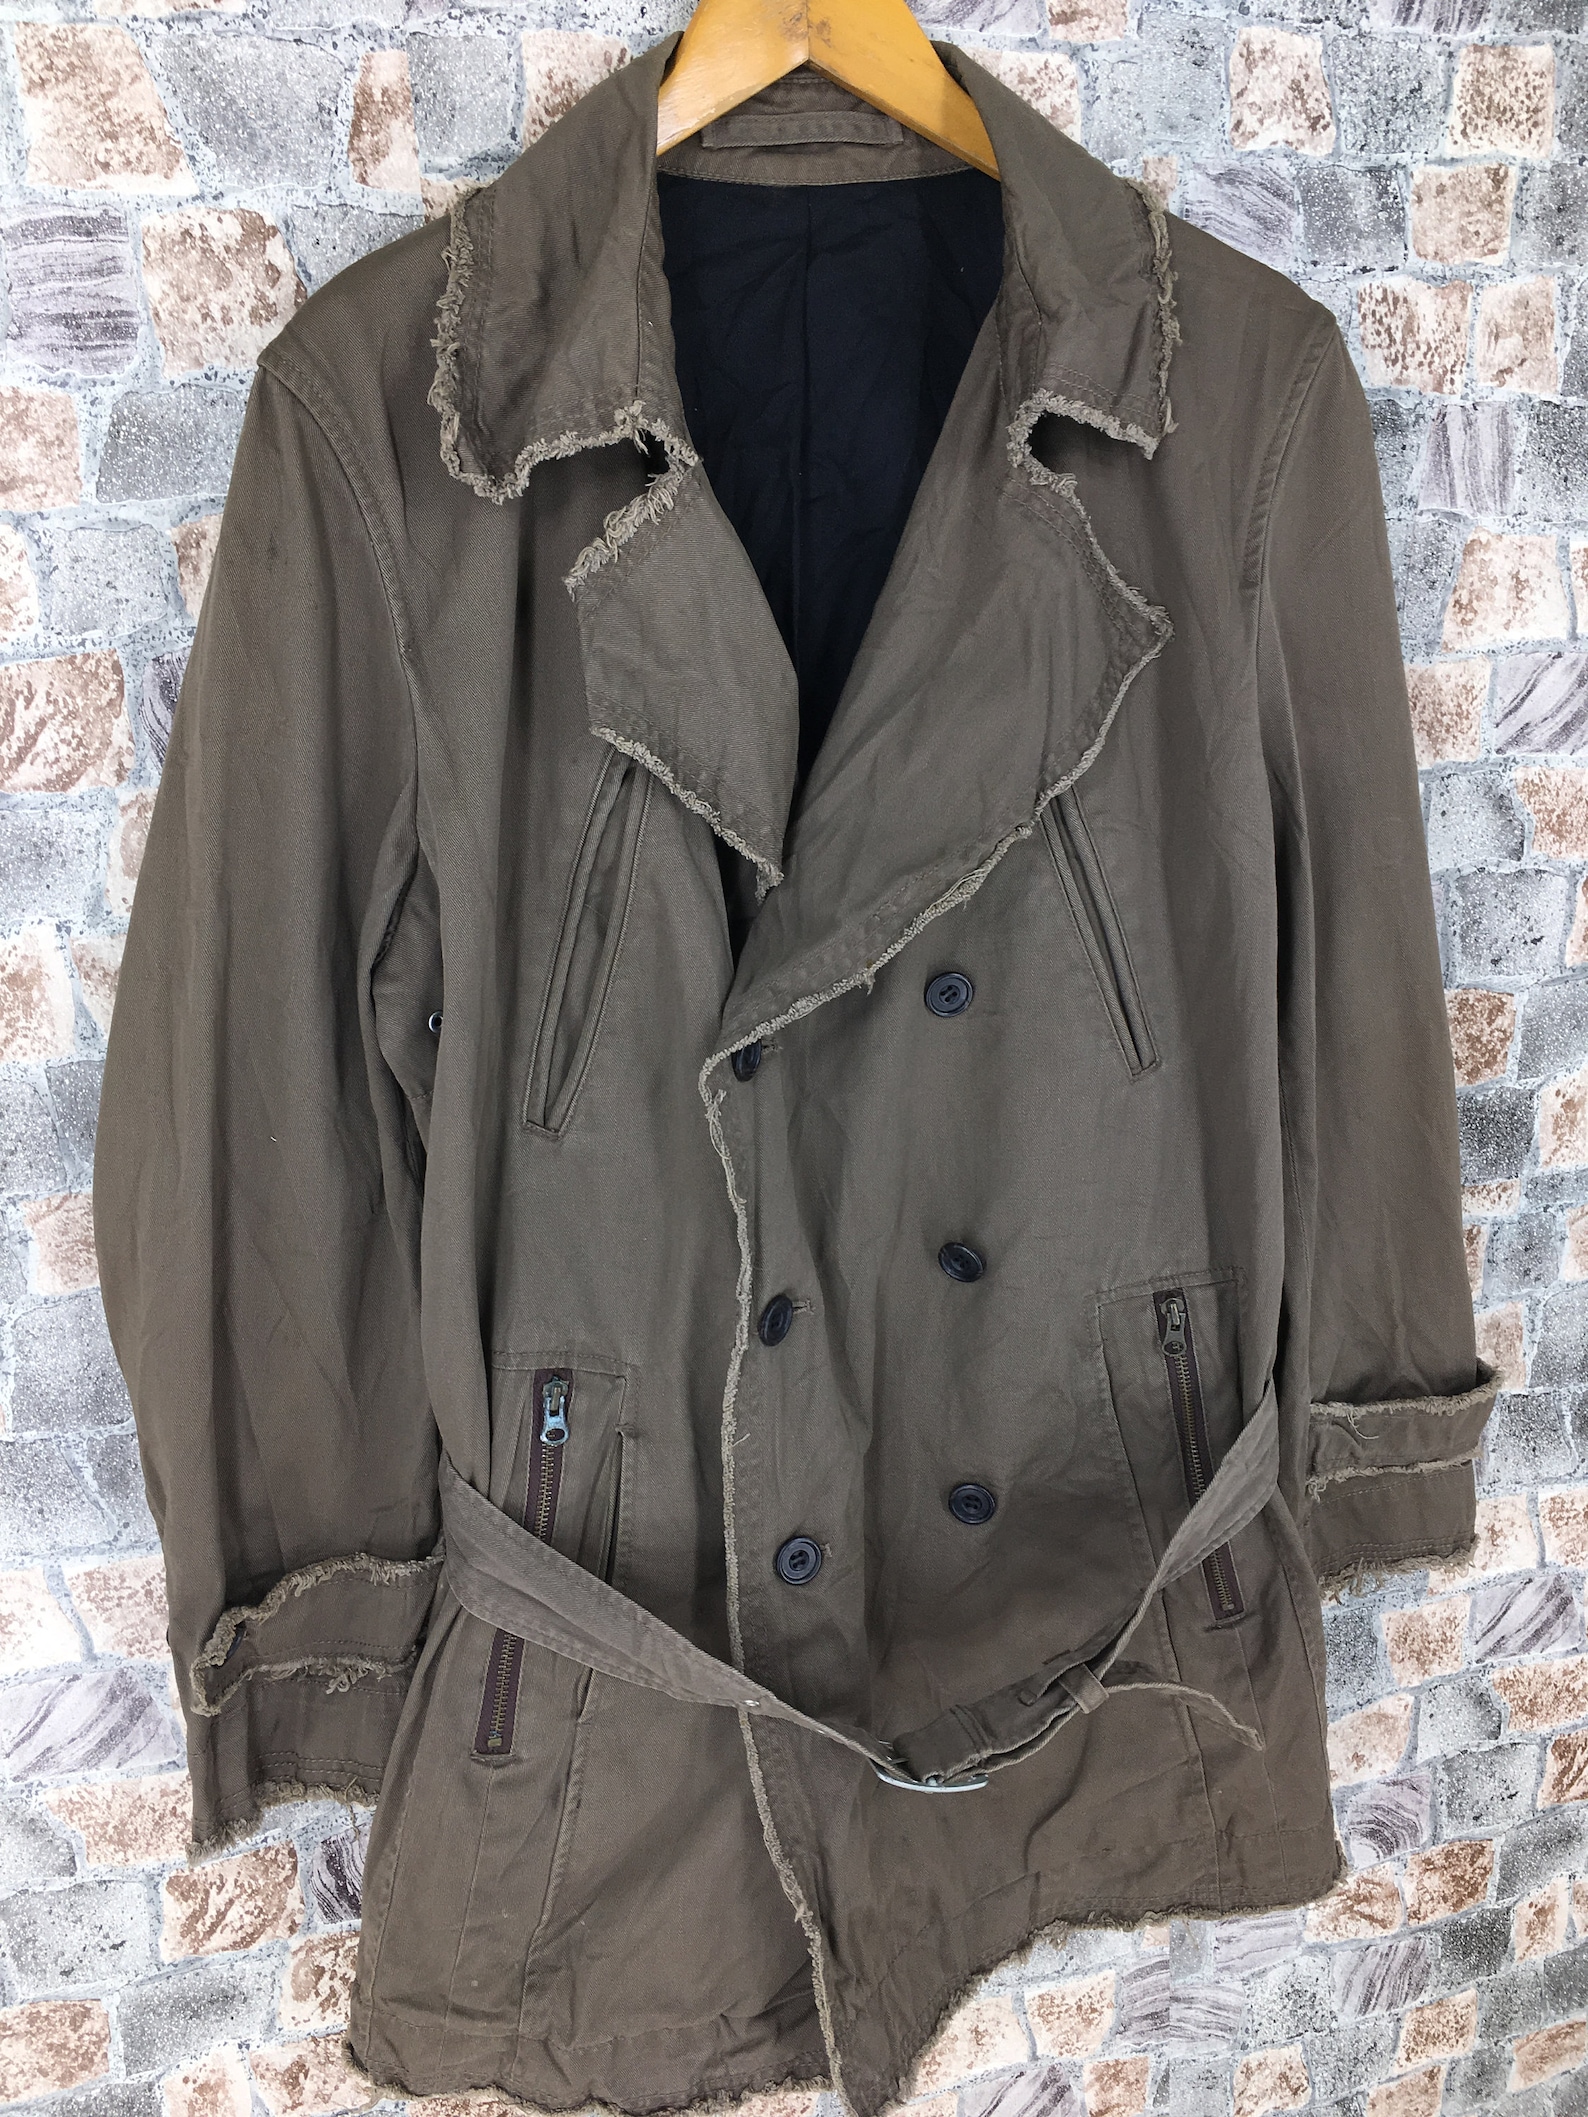 Vintage Japanese Trench Coats Jacket Large Unisex 90's | Etsy